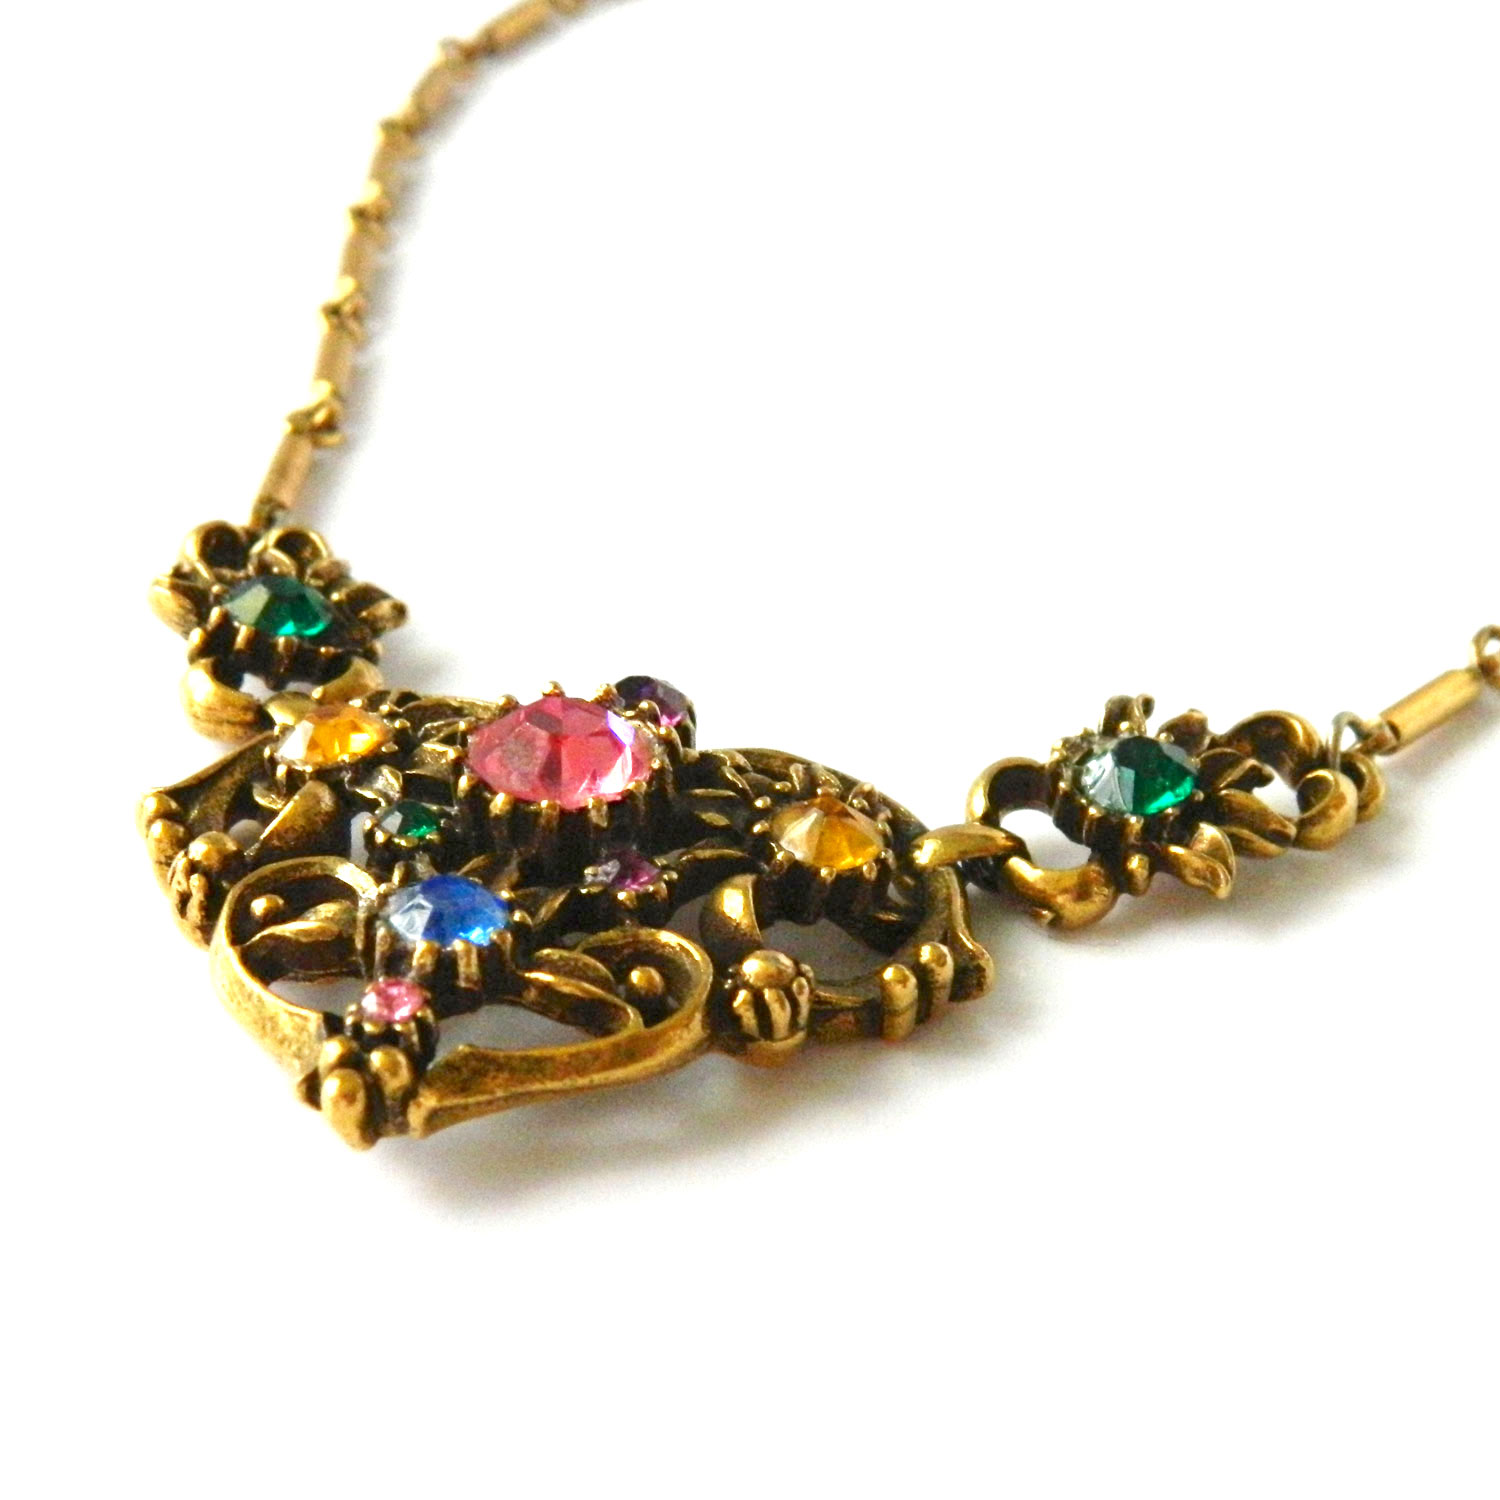 1950s Coro rhinestone necklace